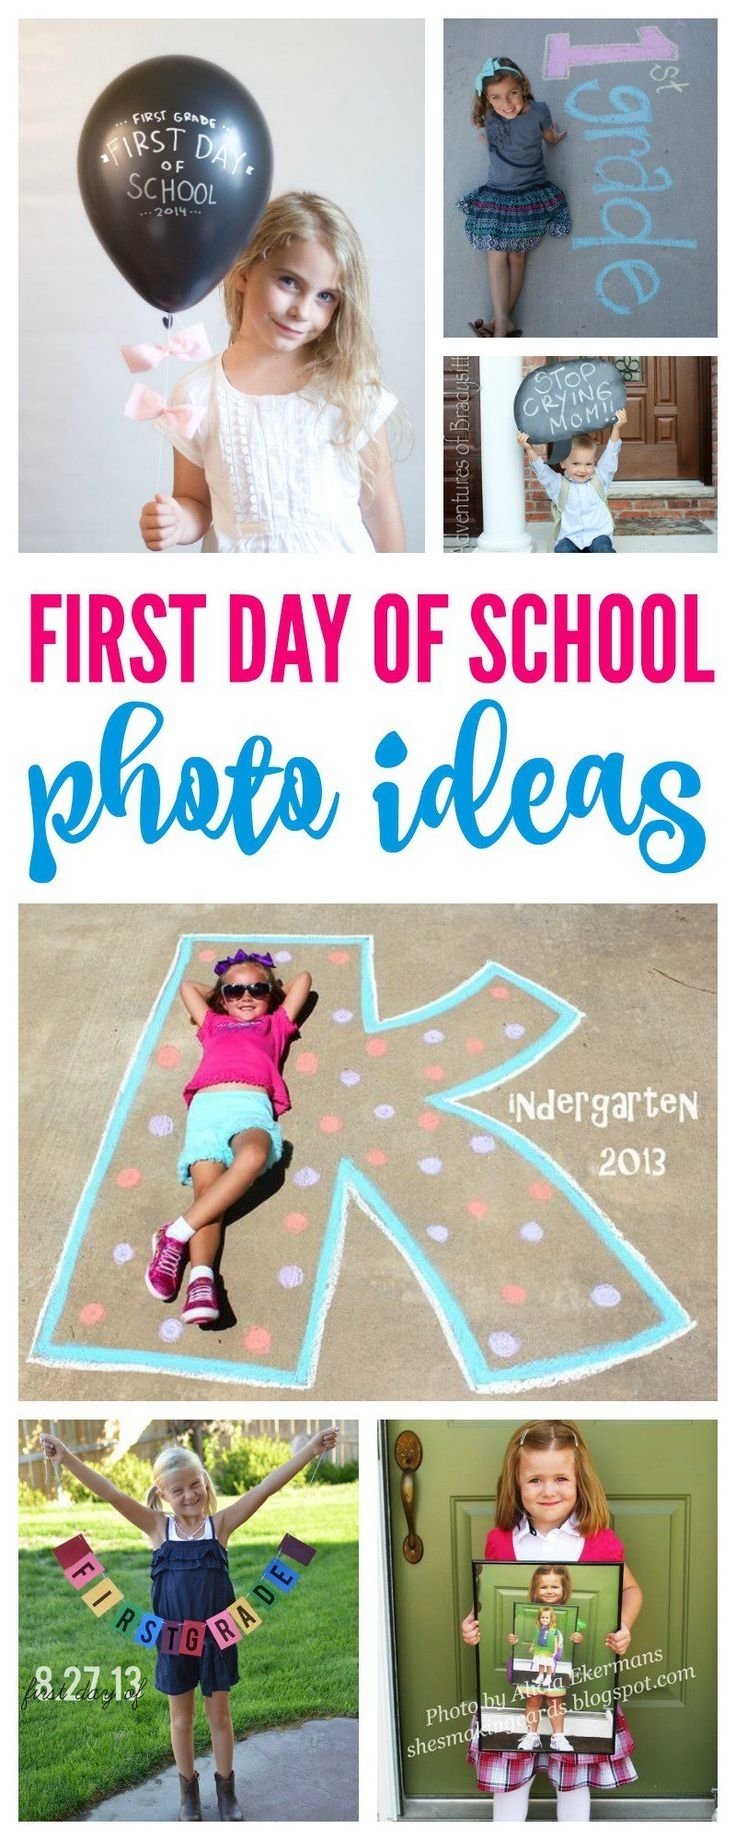 10 Cute Pinterest Back To School Ideas 458 best back to school images on pinterest preschool curriculum 2022